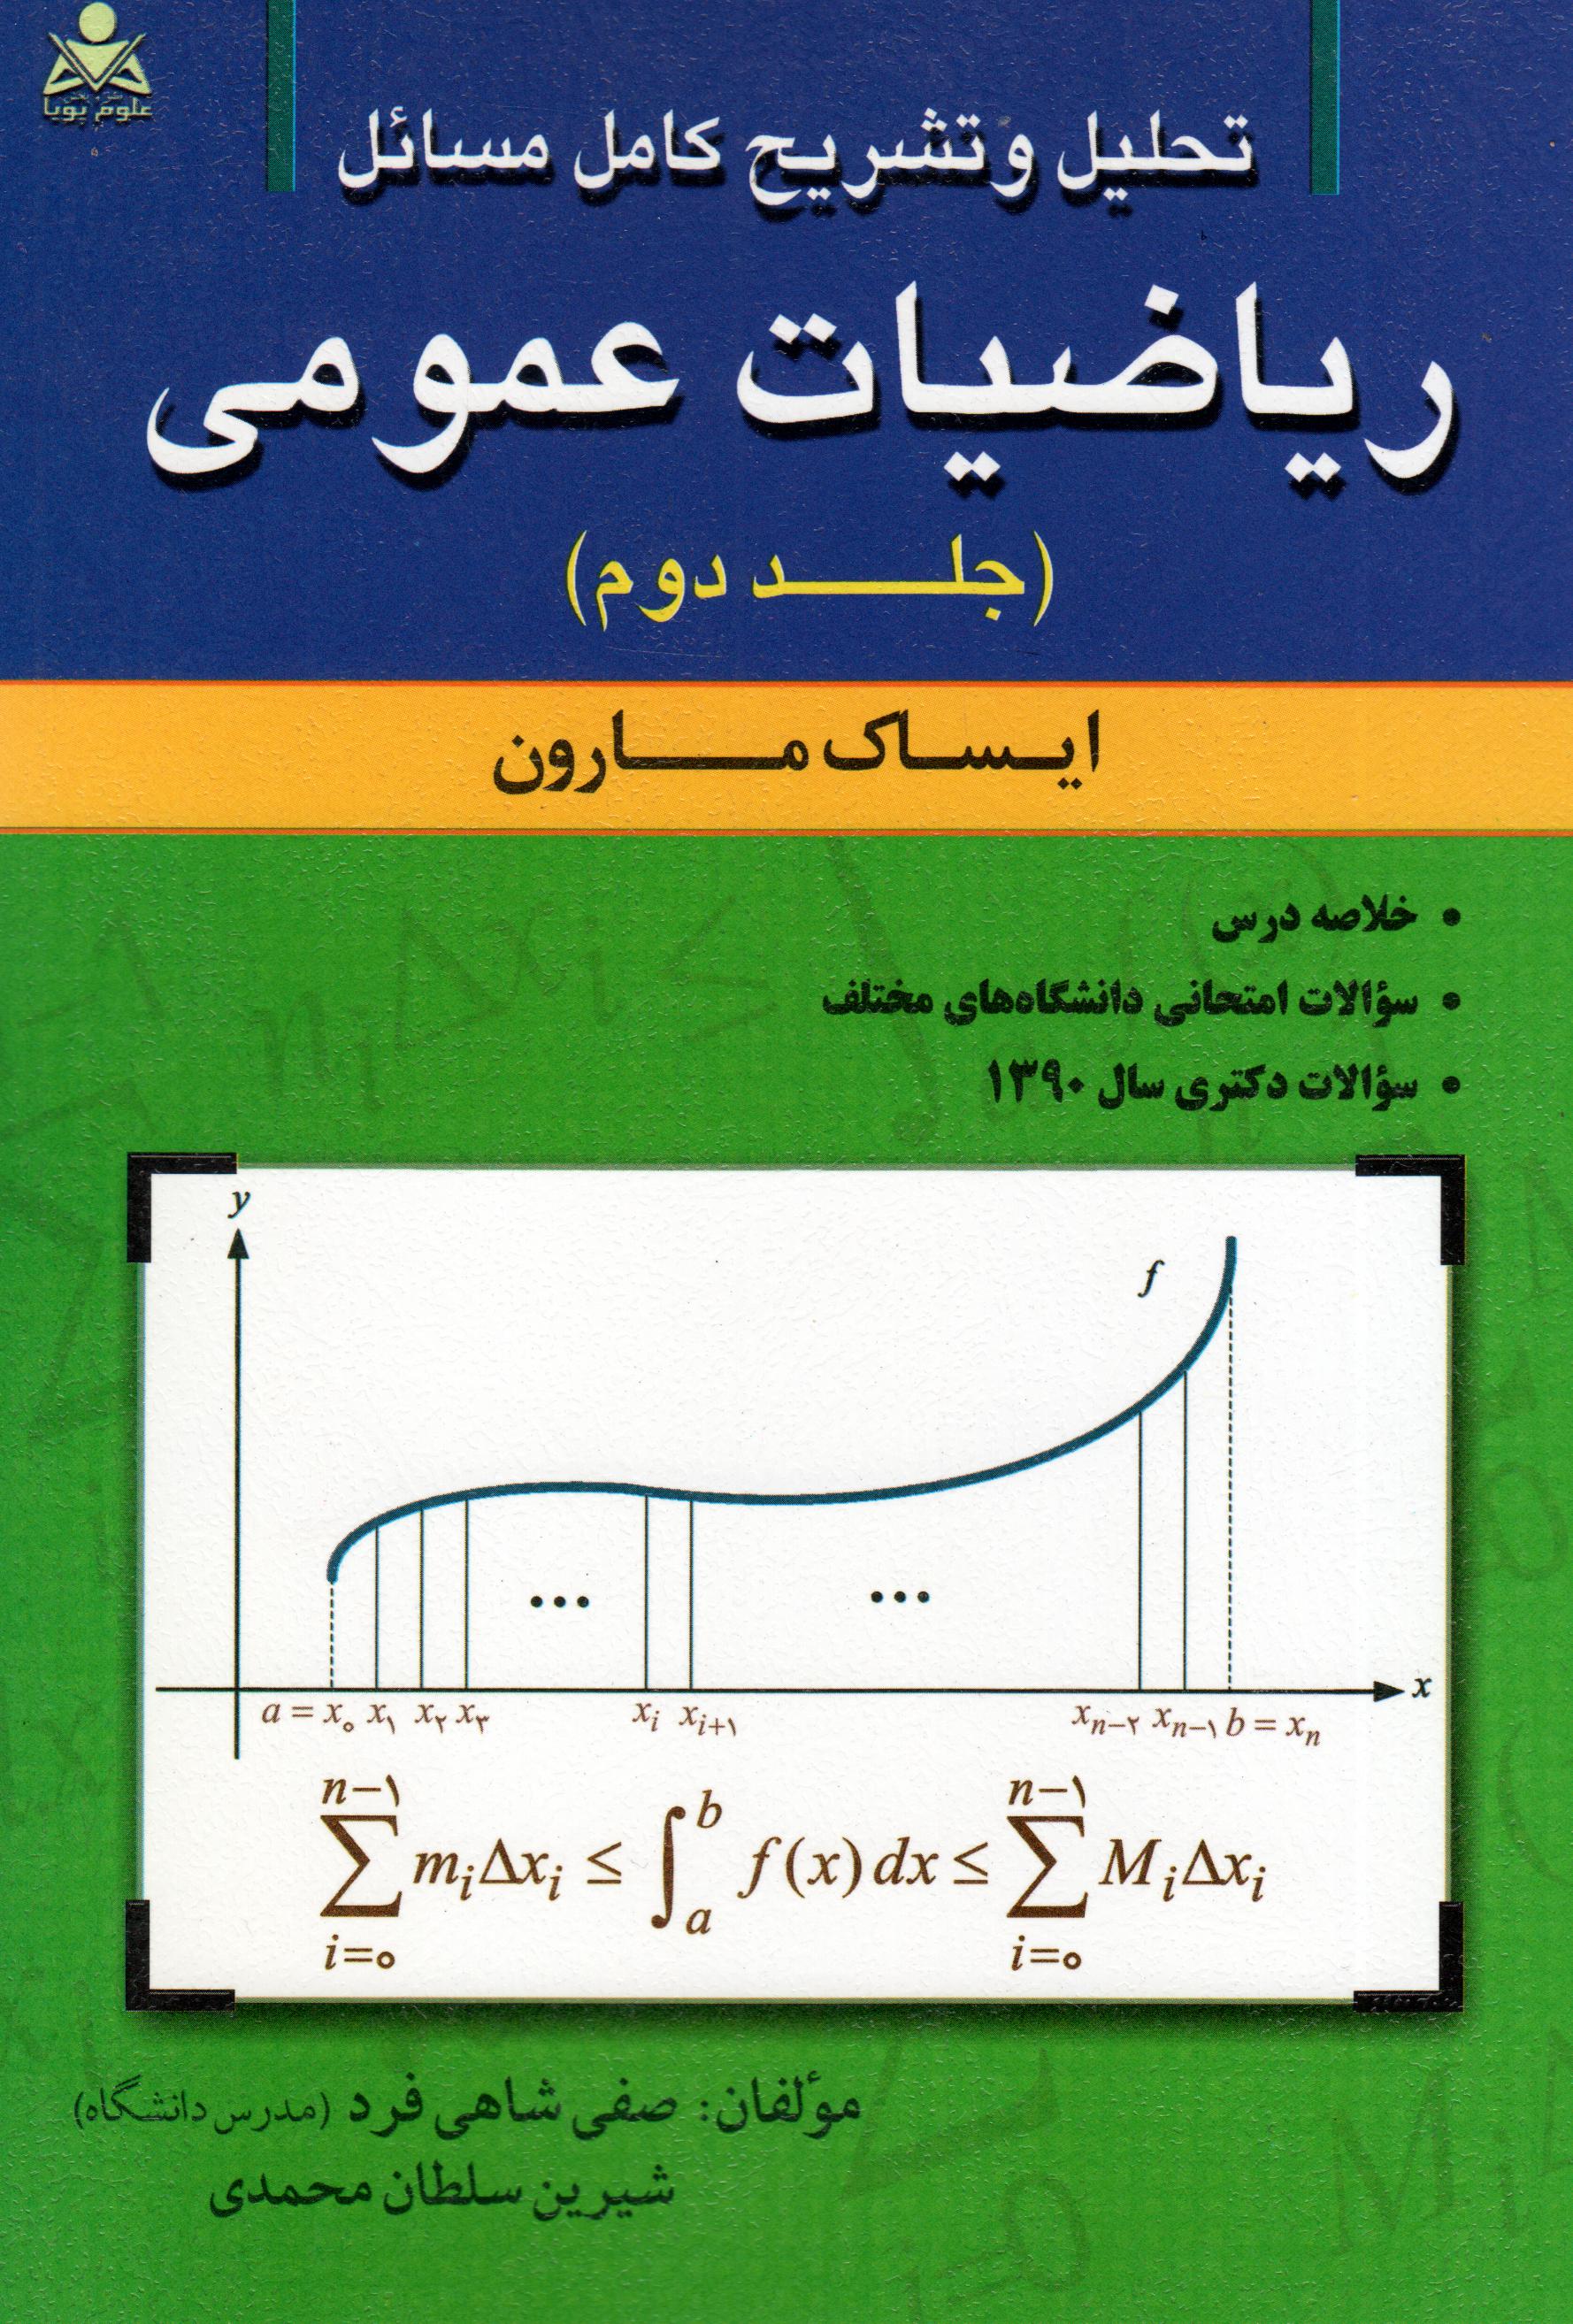 تحلیل و تشریح ریاضیات عمومی جلد دوم مارون نشرامید انقلاب